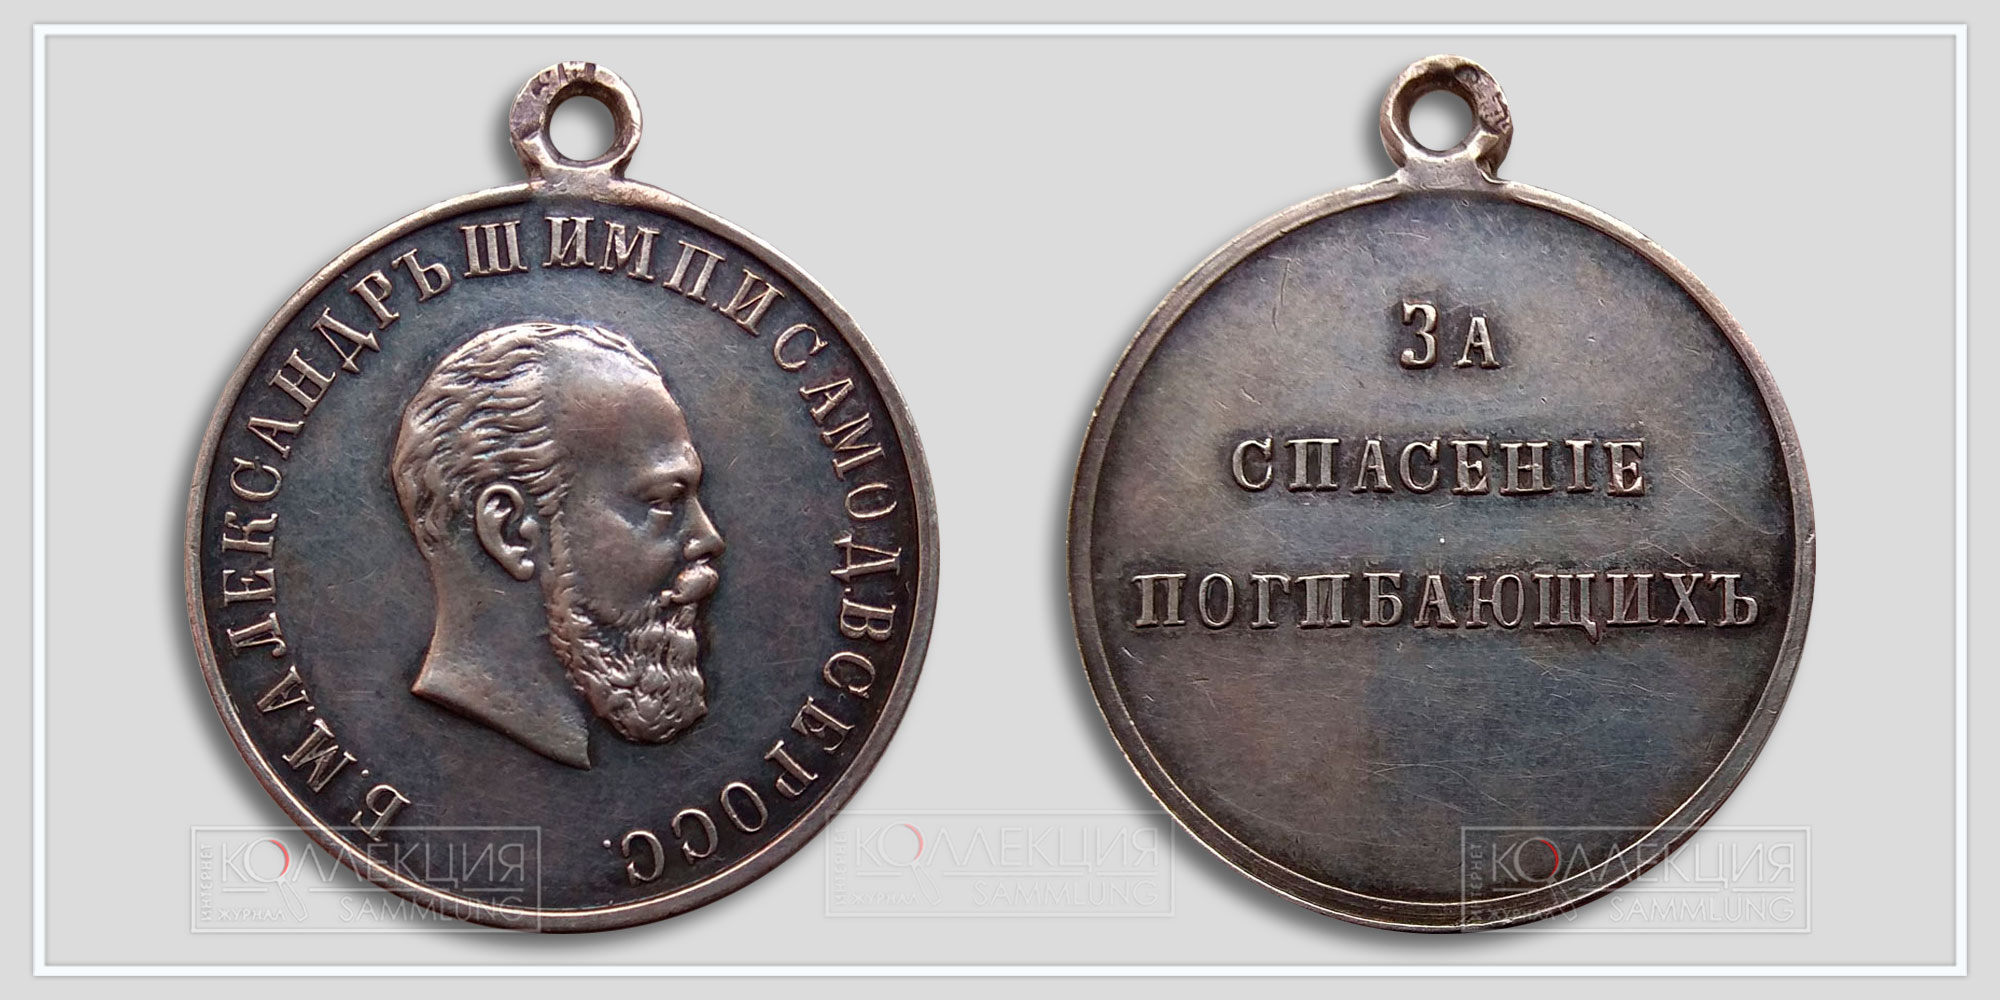 Медаль "За спасение погибающих" Александр III Из архива Фалеристика.инфо Разместил коллега Сибирякъ